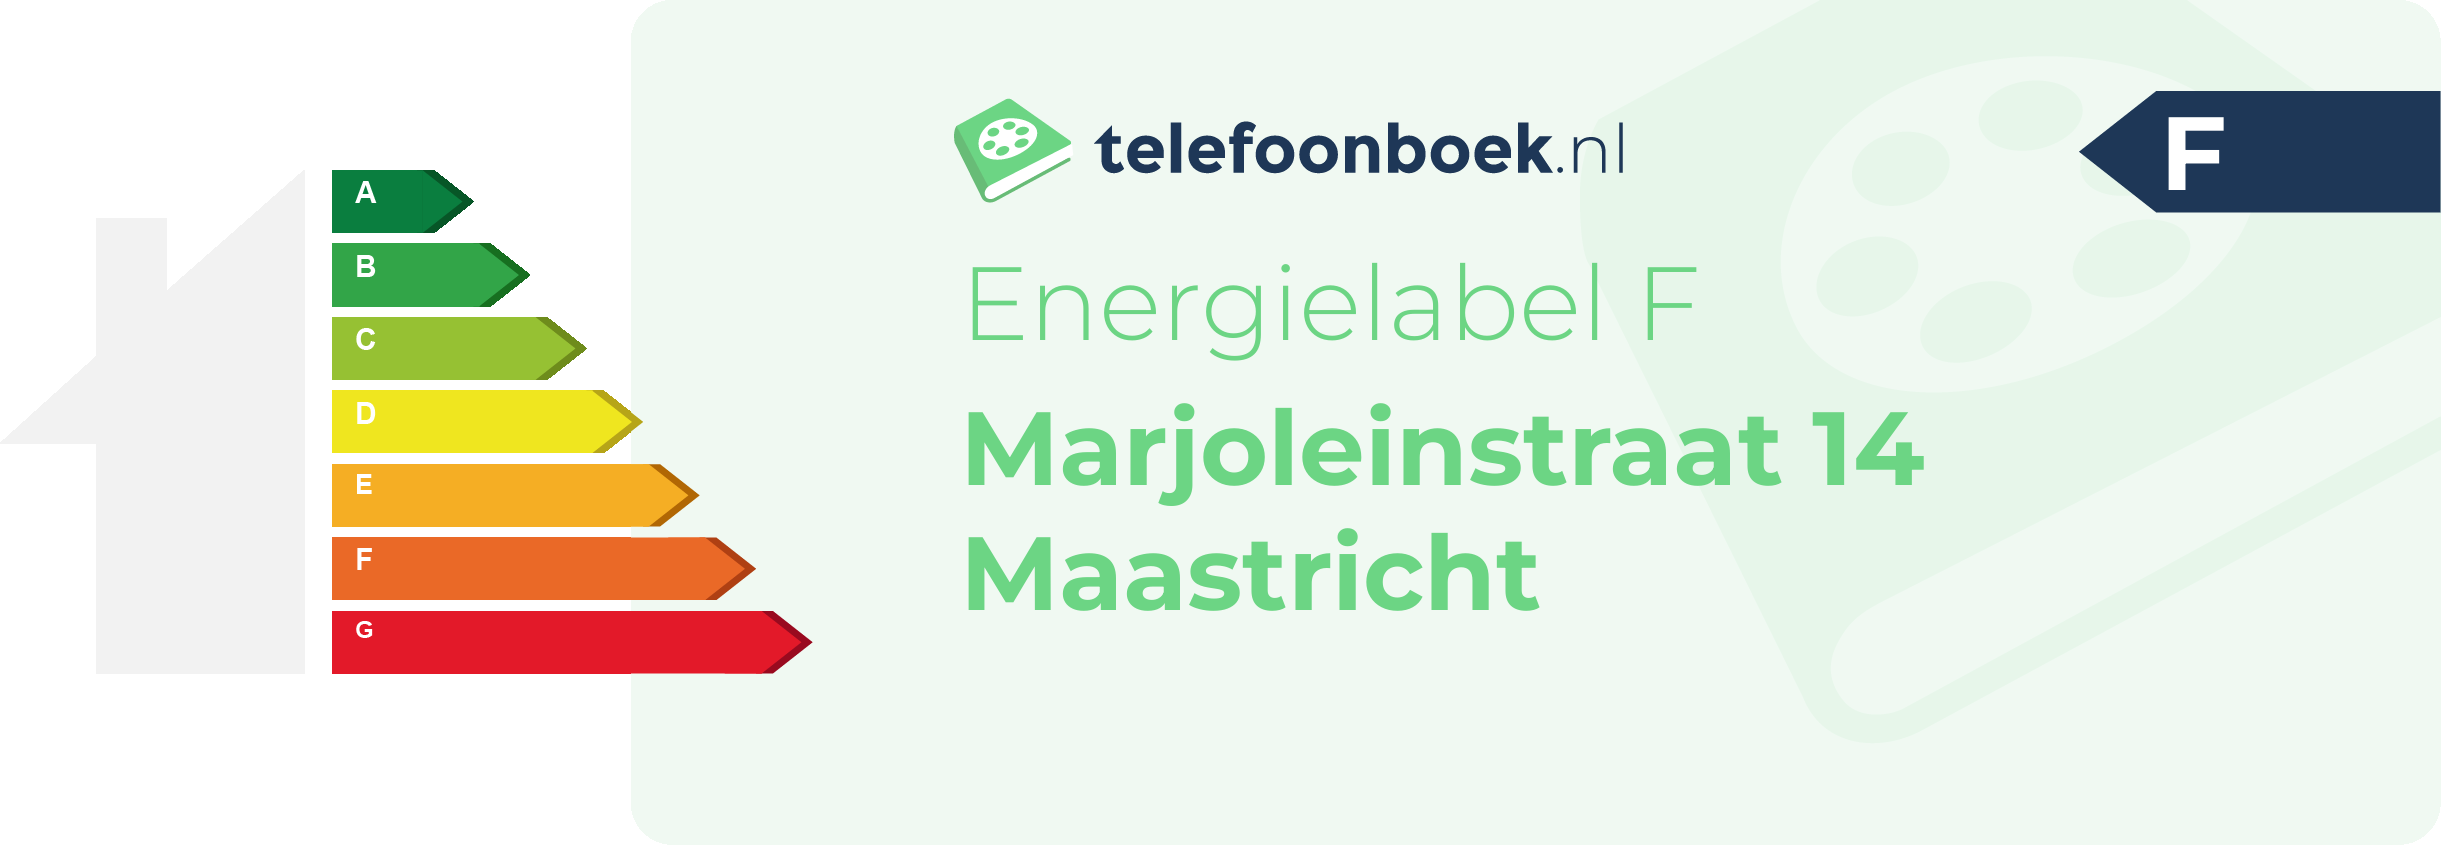 Energielabel Marjoleinstraat 14 Maastricht